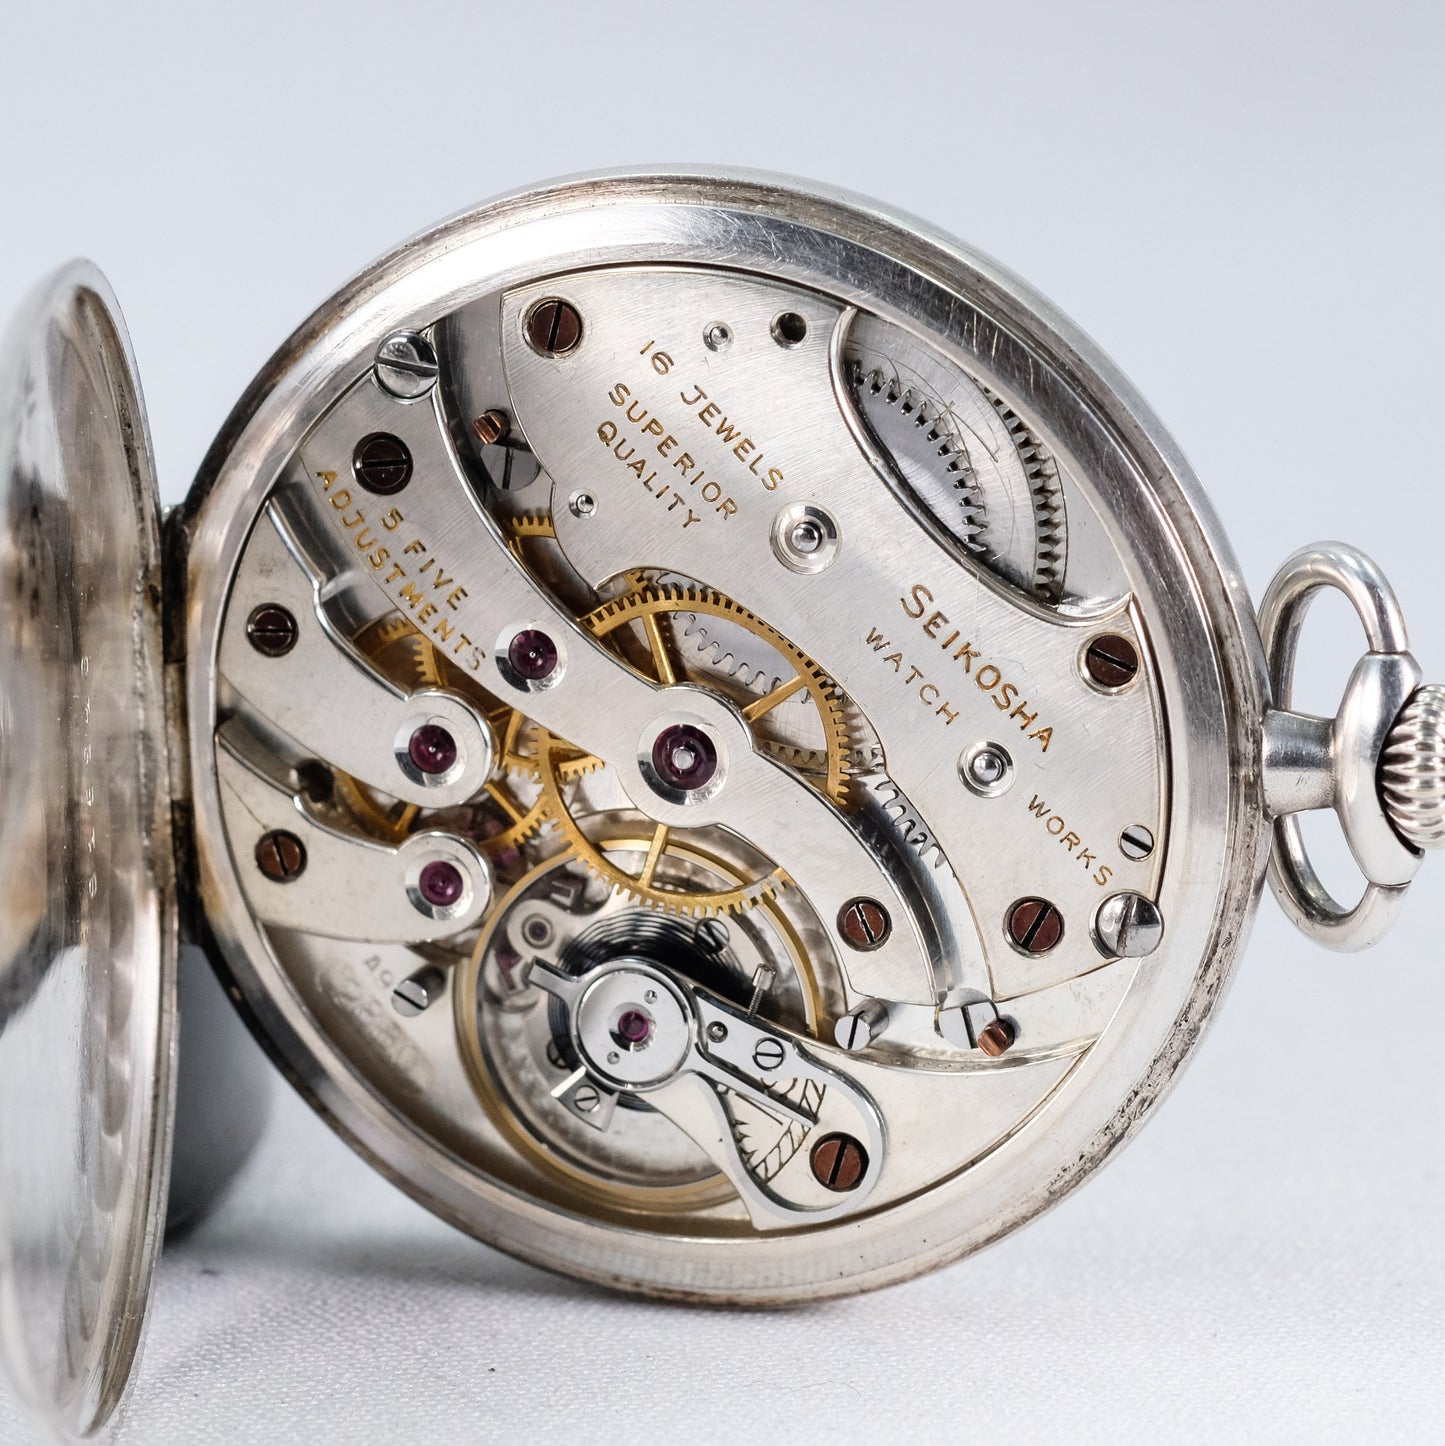 1940 Rare Seikosha "Nardin" gift from the Emperor pocket watch